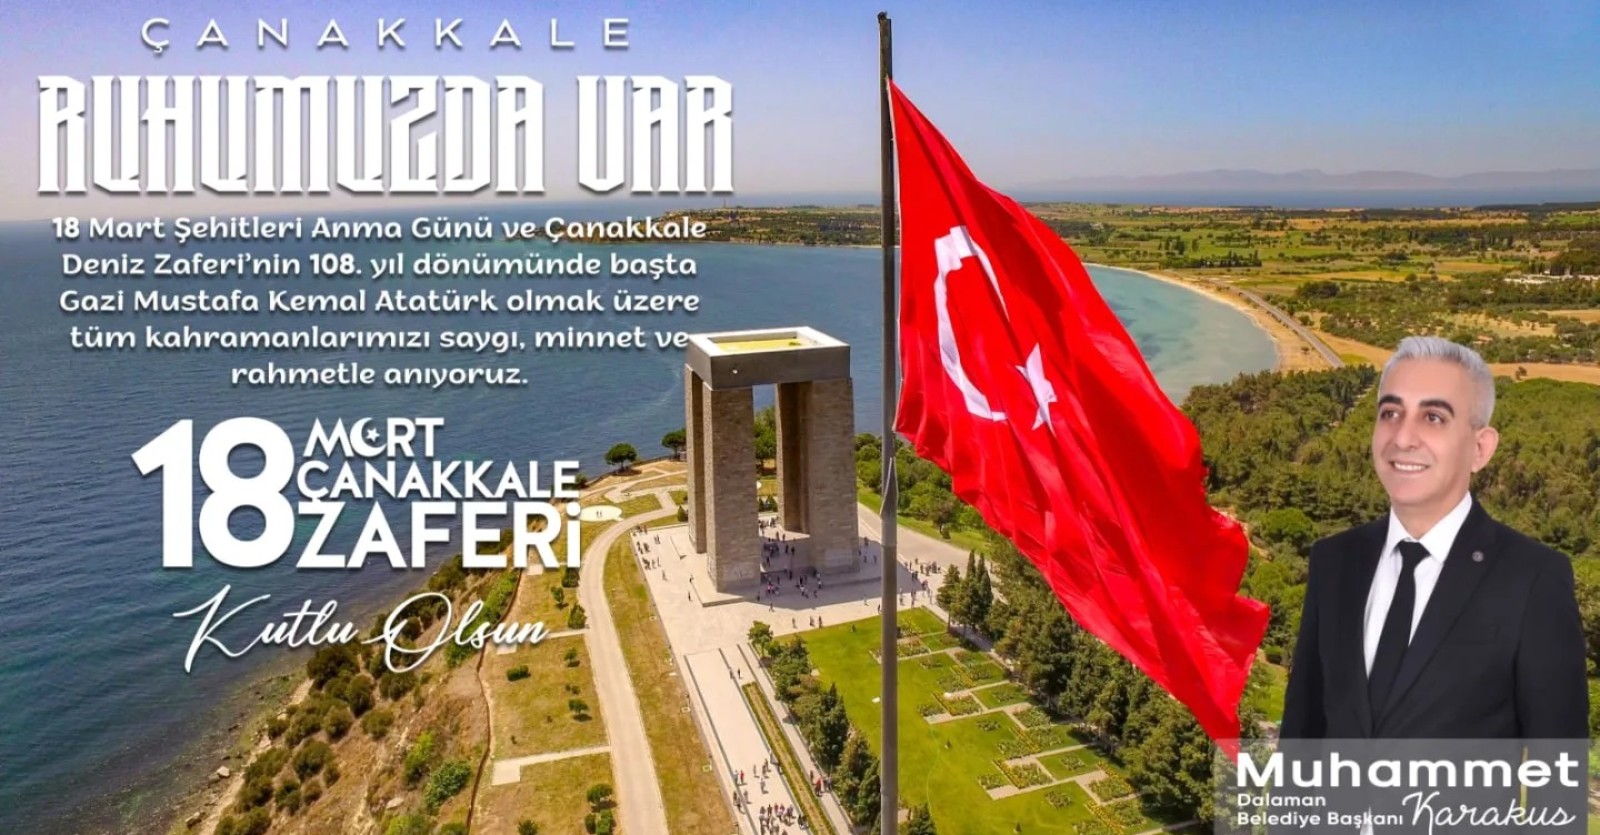 Mücadelenin, inancın ve fedakarlığın simgesi 18 Mart Çanakkale Zaferi’nin 108. yılı kutlu olsun.